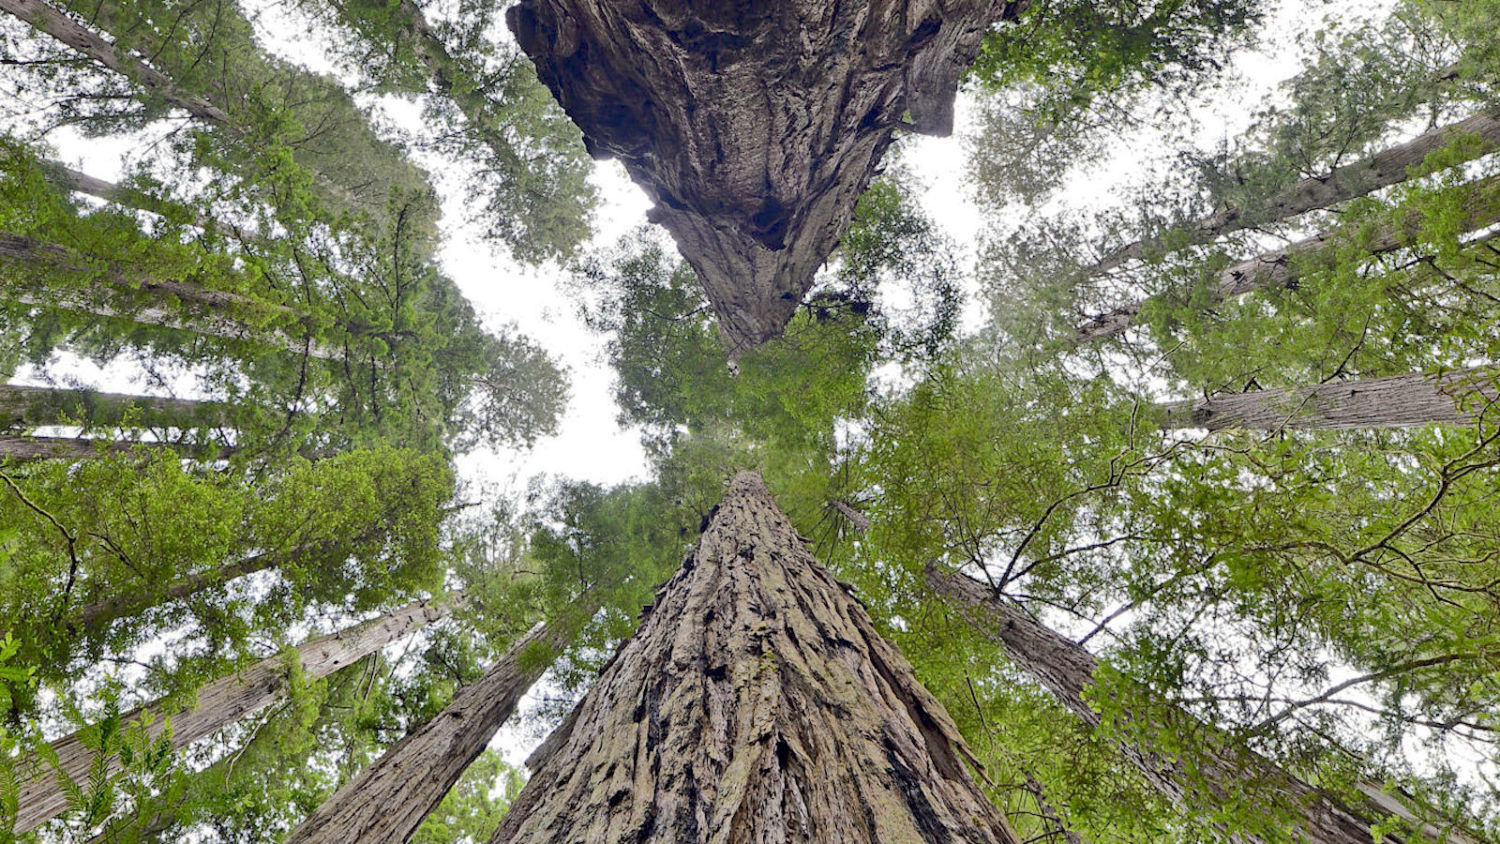 Why we should bring back redwood forests